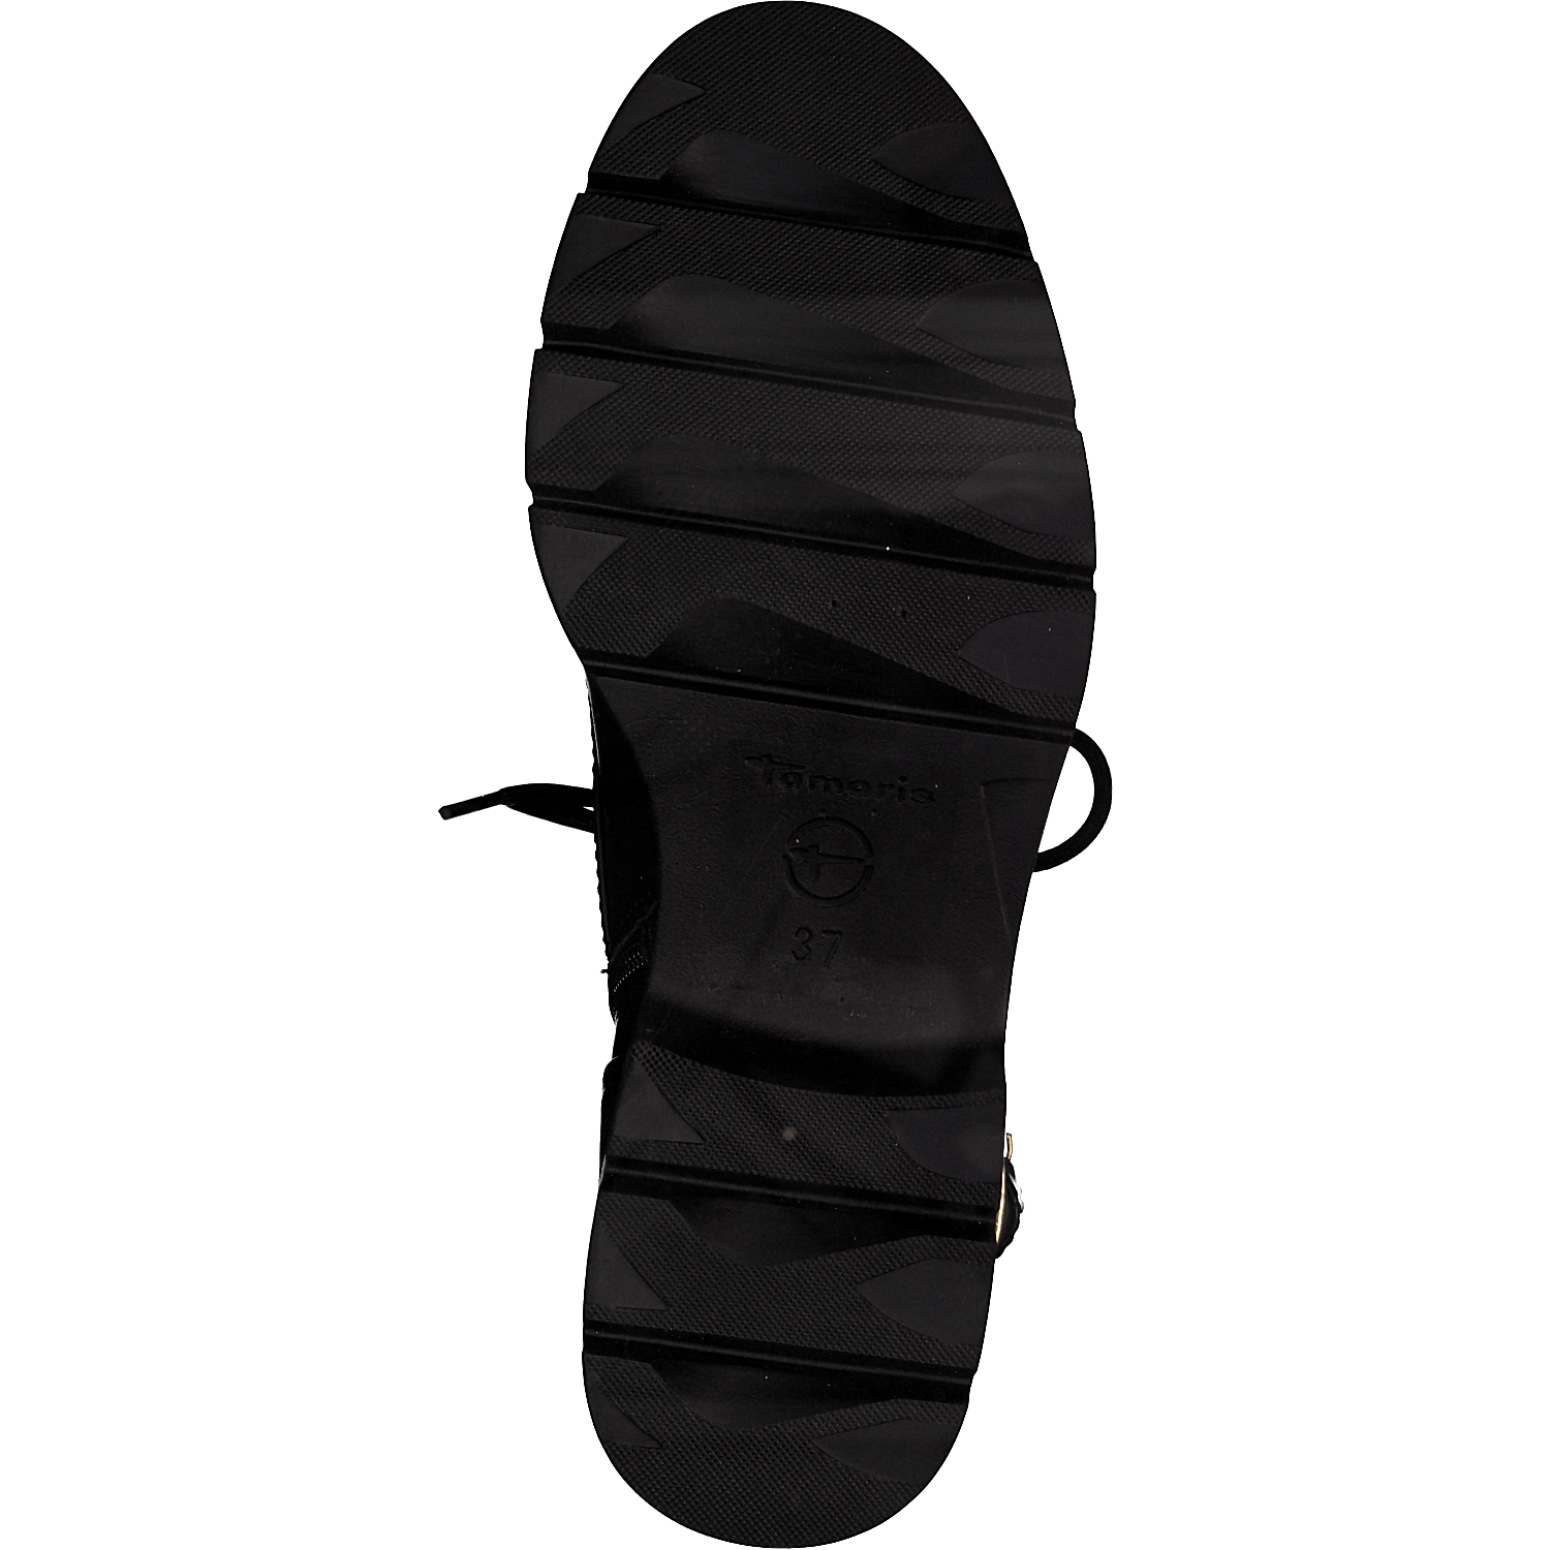 Bottines à lacets de la marque Tamaris. Référence 25289-41 001 Black. Disponible chez Chauss'Family magasin de chaussures à Issoire.